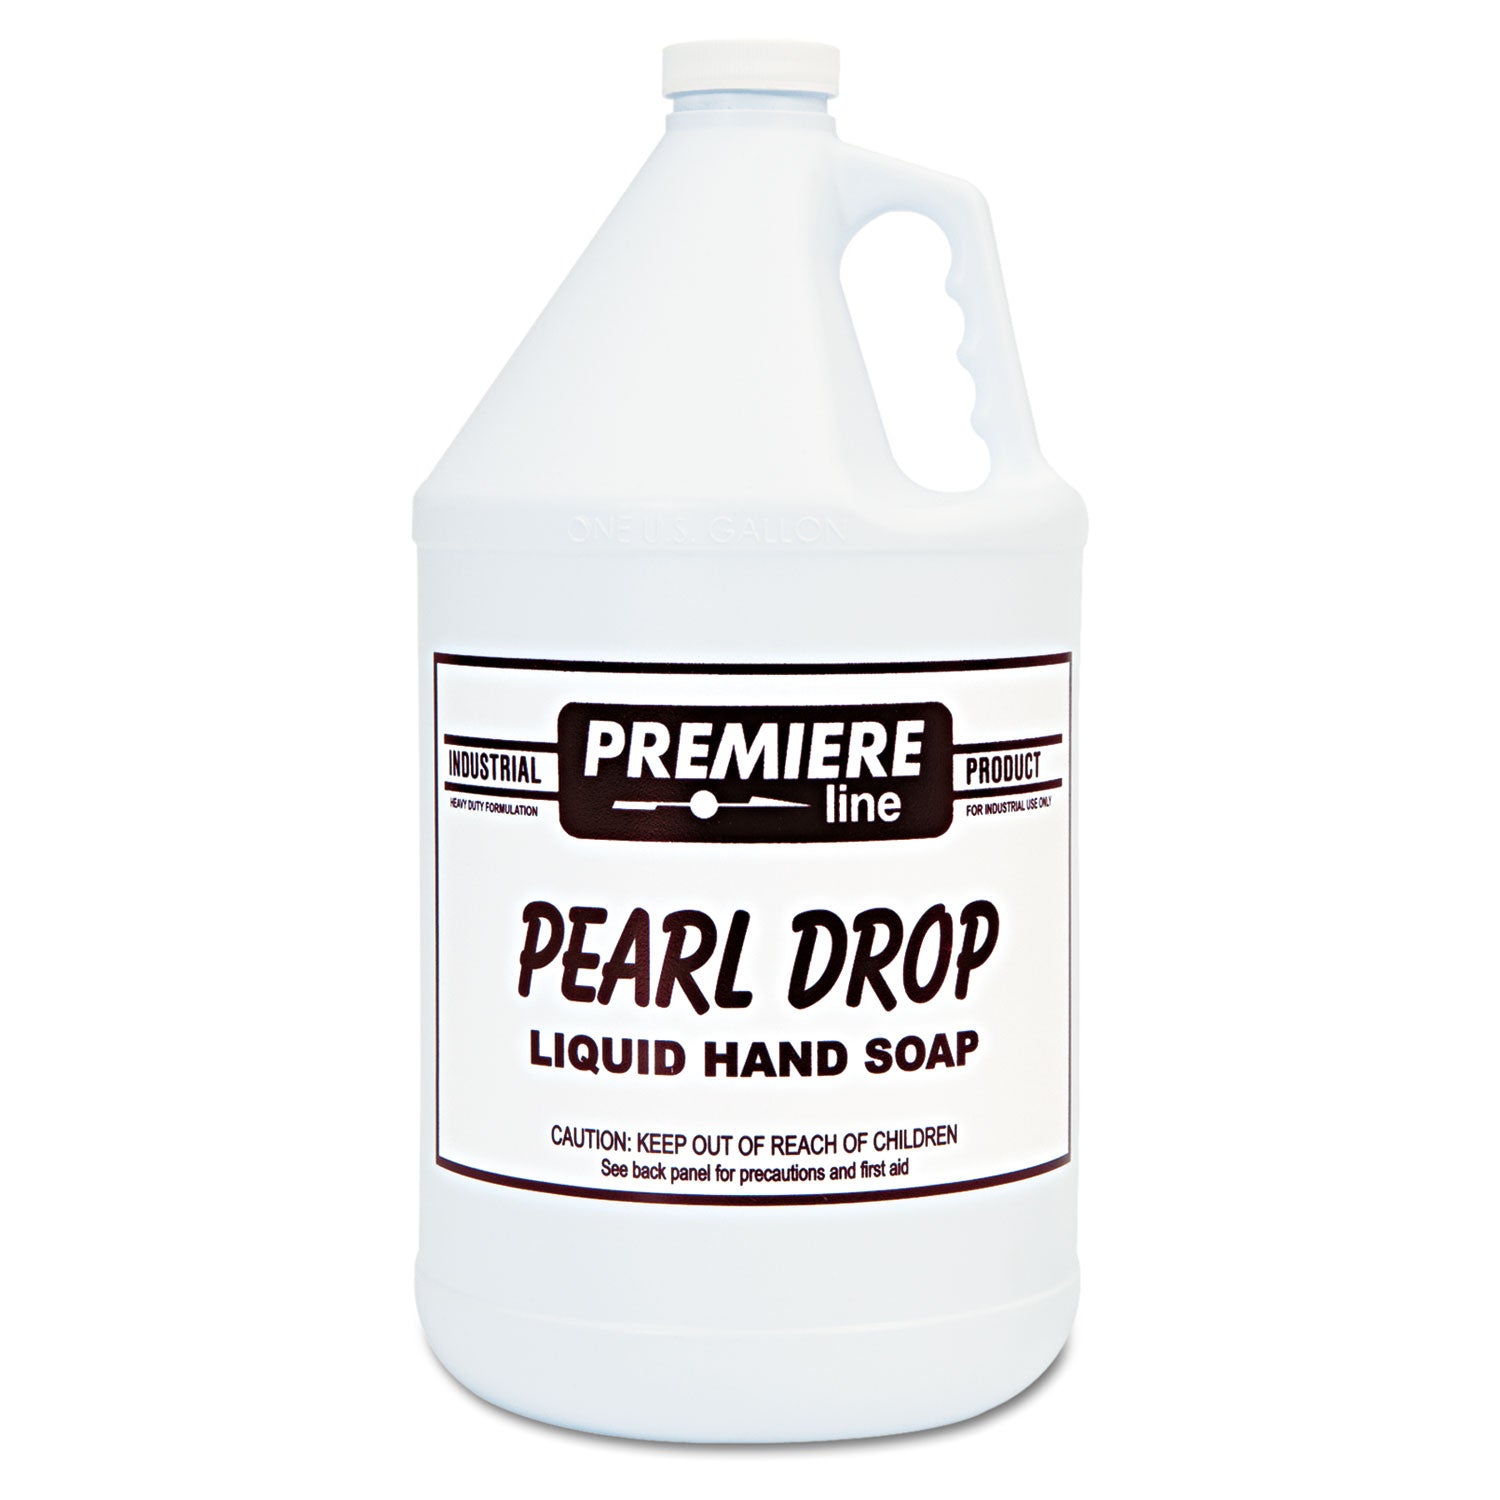 pearl-drop-lotion-hand-soap-1-gal-bottle-4-carton_kespearldrop - 1